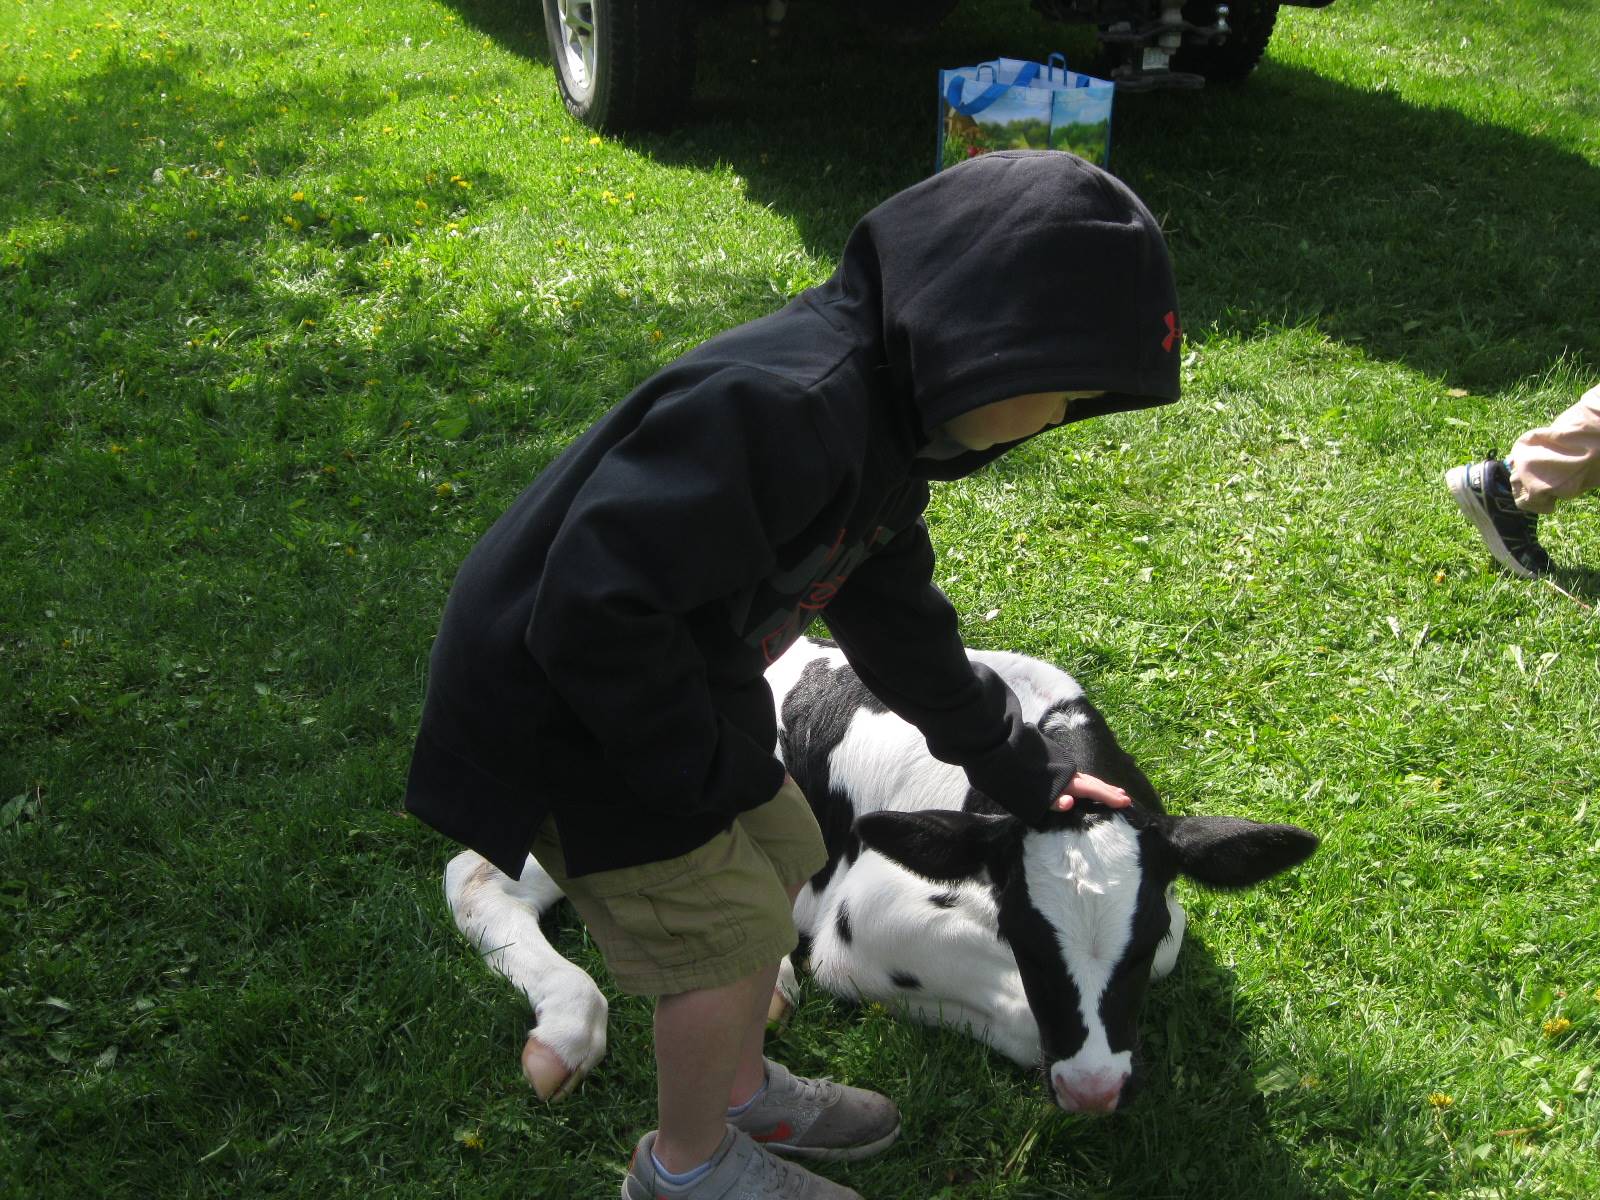 Student pets a calf.